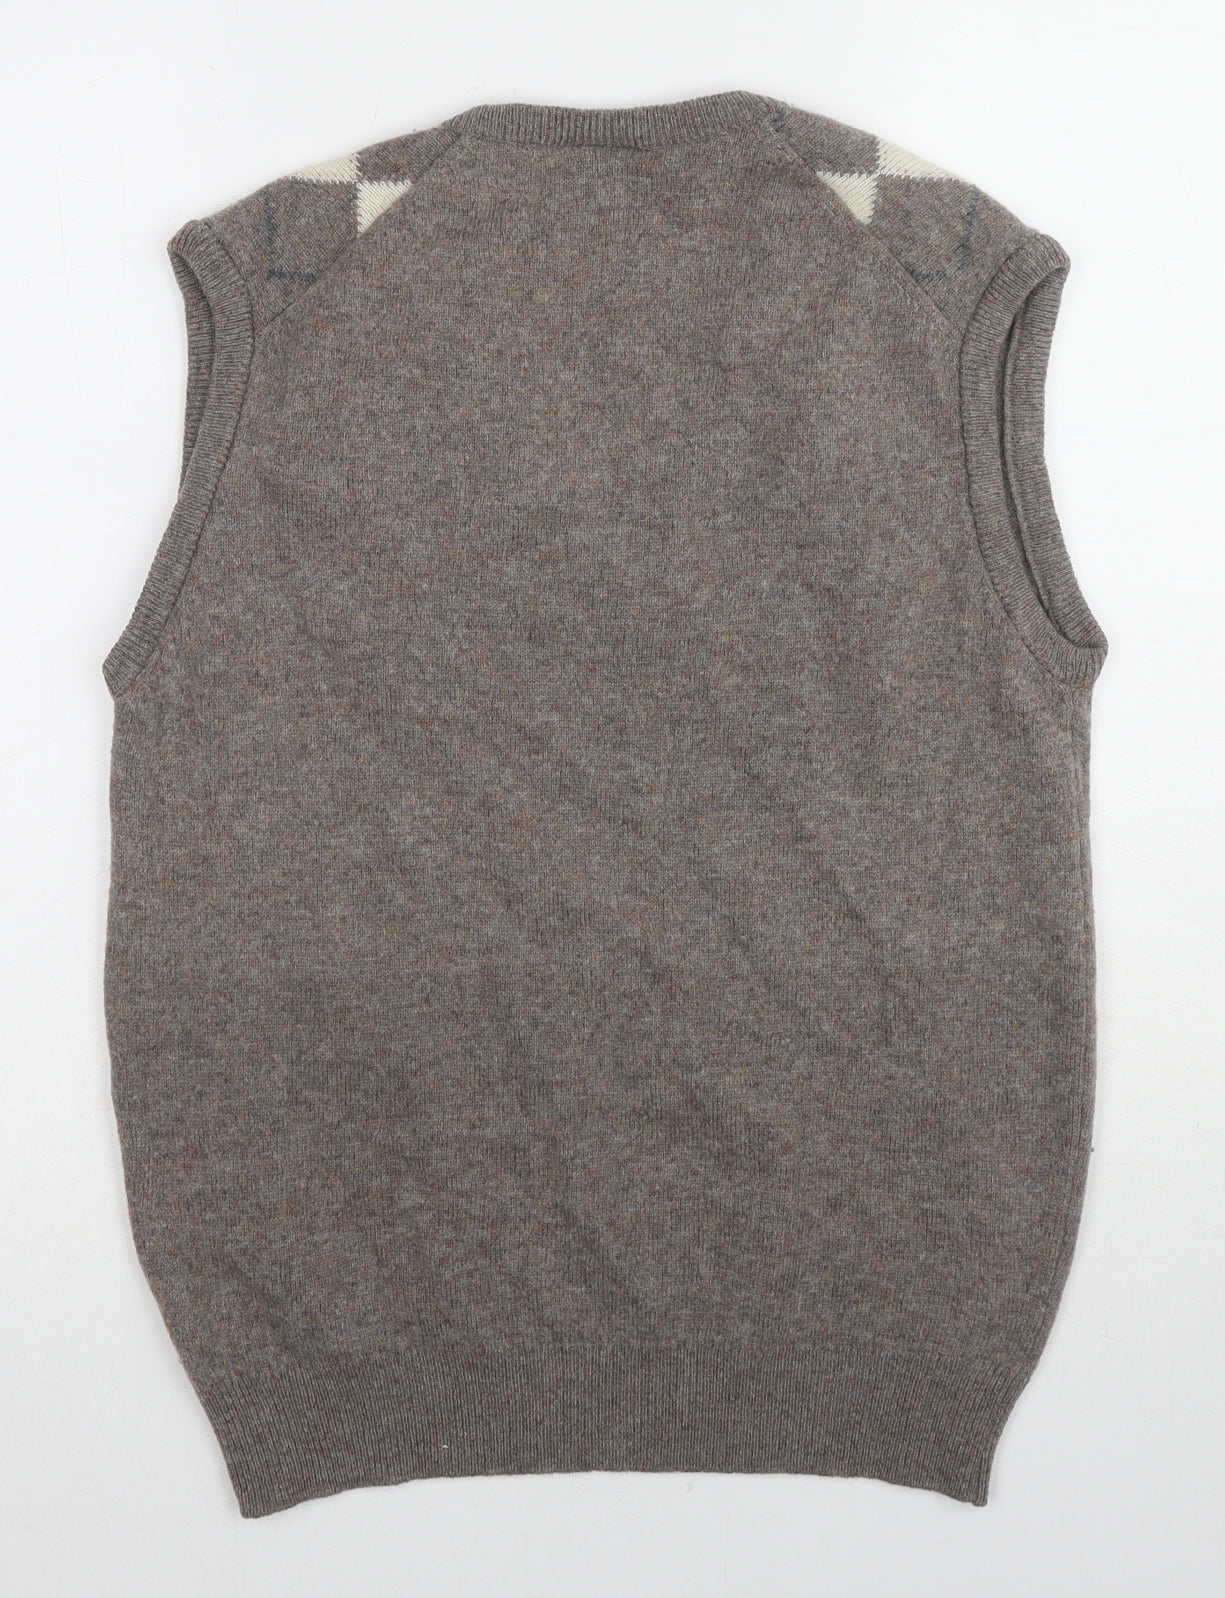 BHS Mens Beige V-Neck Argyle/Diamond Wool Vest Jumper Size L Sleeveless